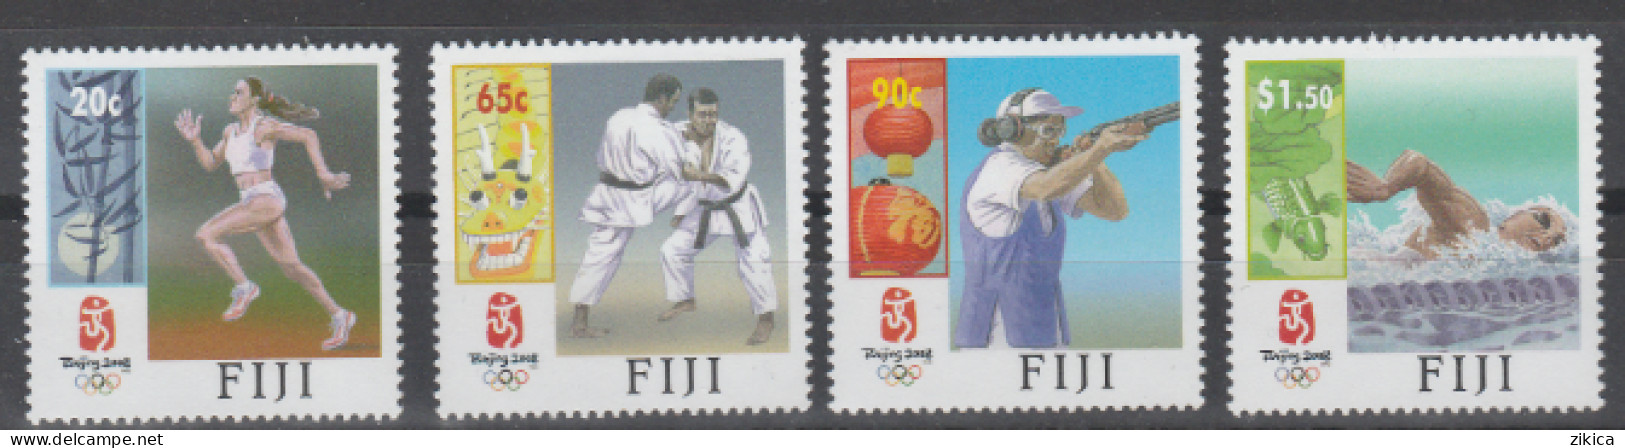 Fiji - 2008 Olympic Games Beijing,China  MNH** - Fiji (1970-...)